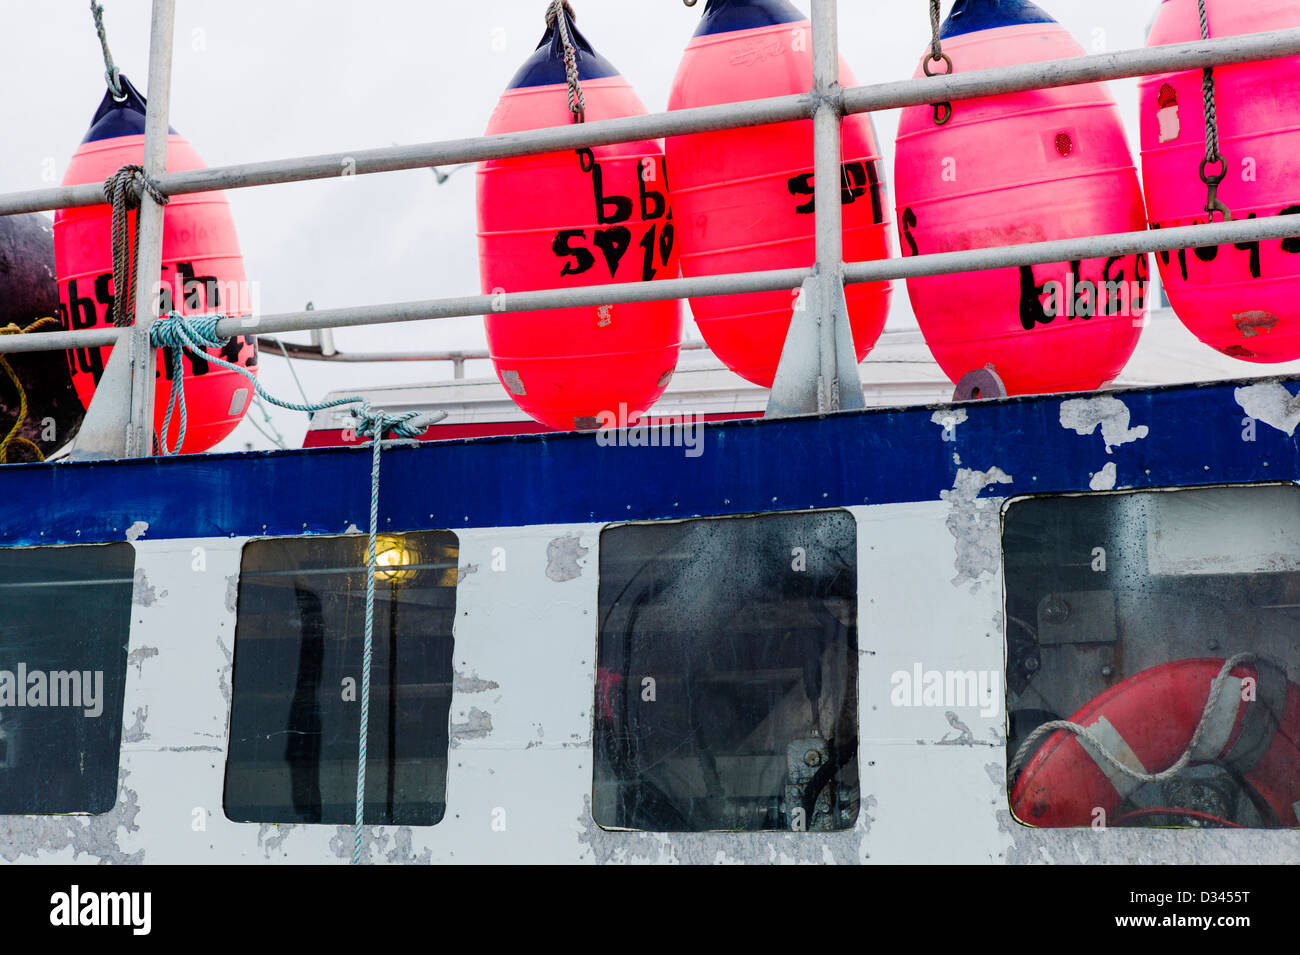 Charter e commerciale di pesca le barche nel porto, Omero, Alaska, Stati Uniti d'America. Dettaglio delle boe e galleggianti. Foto Stock